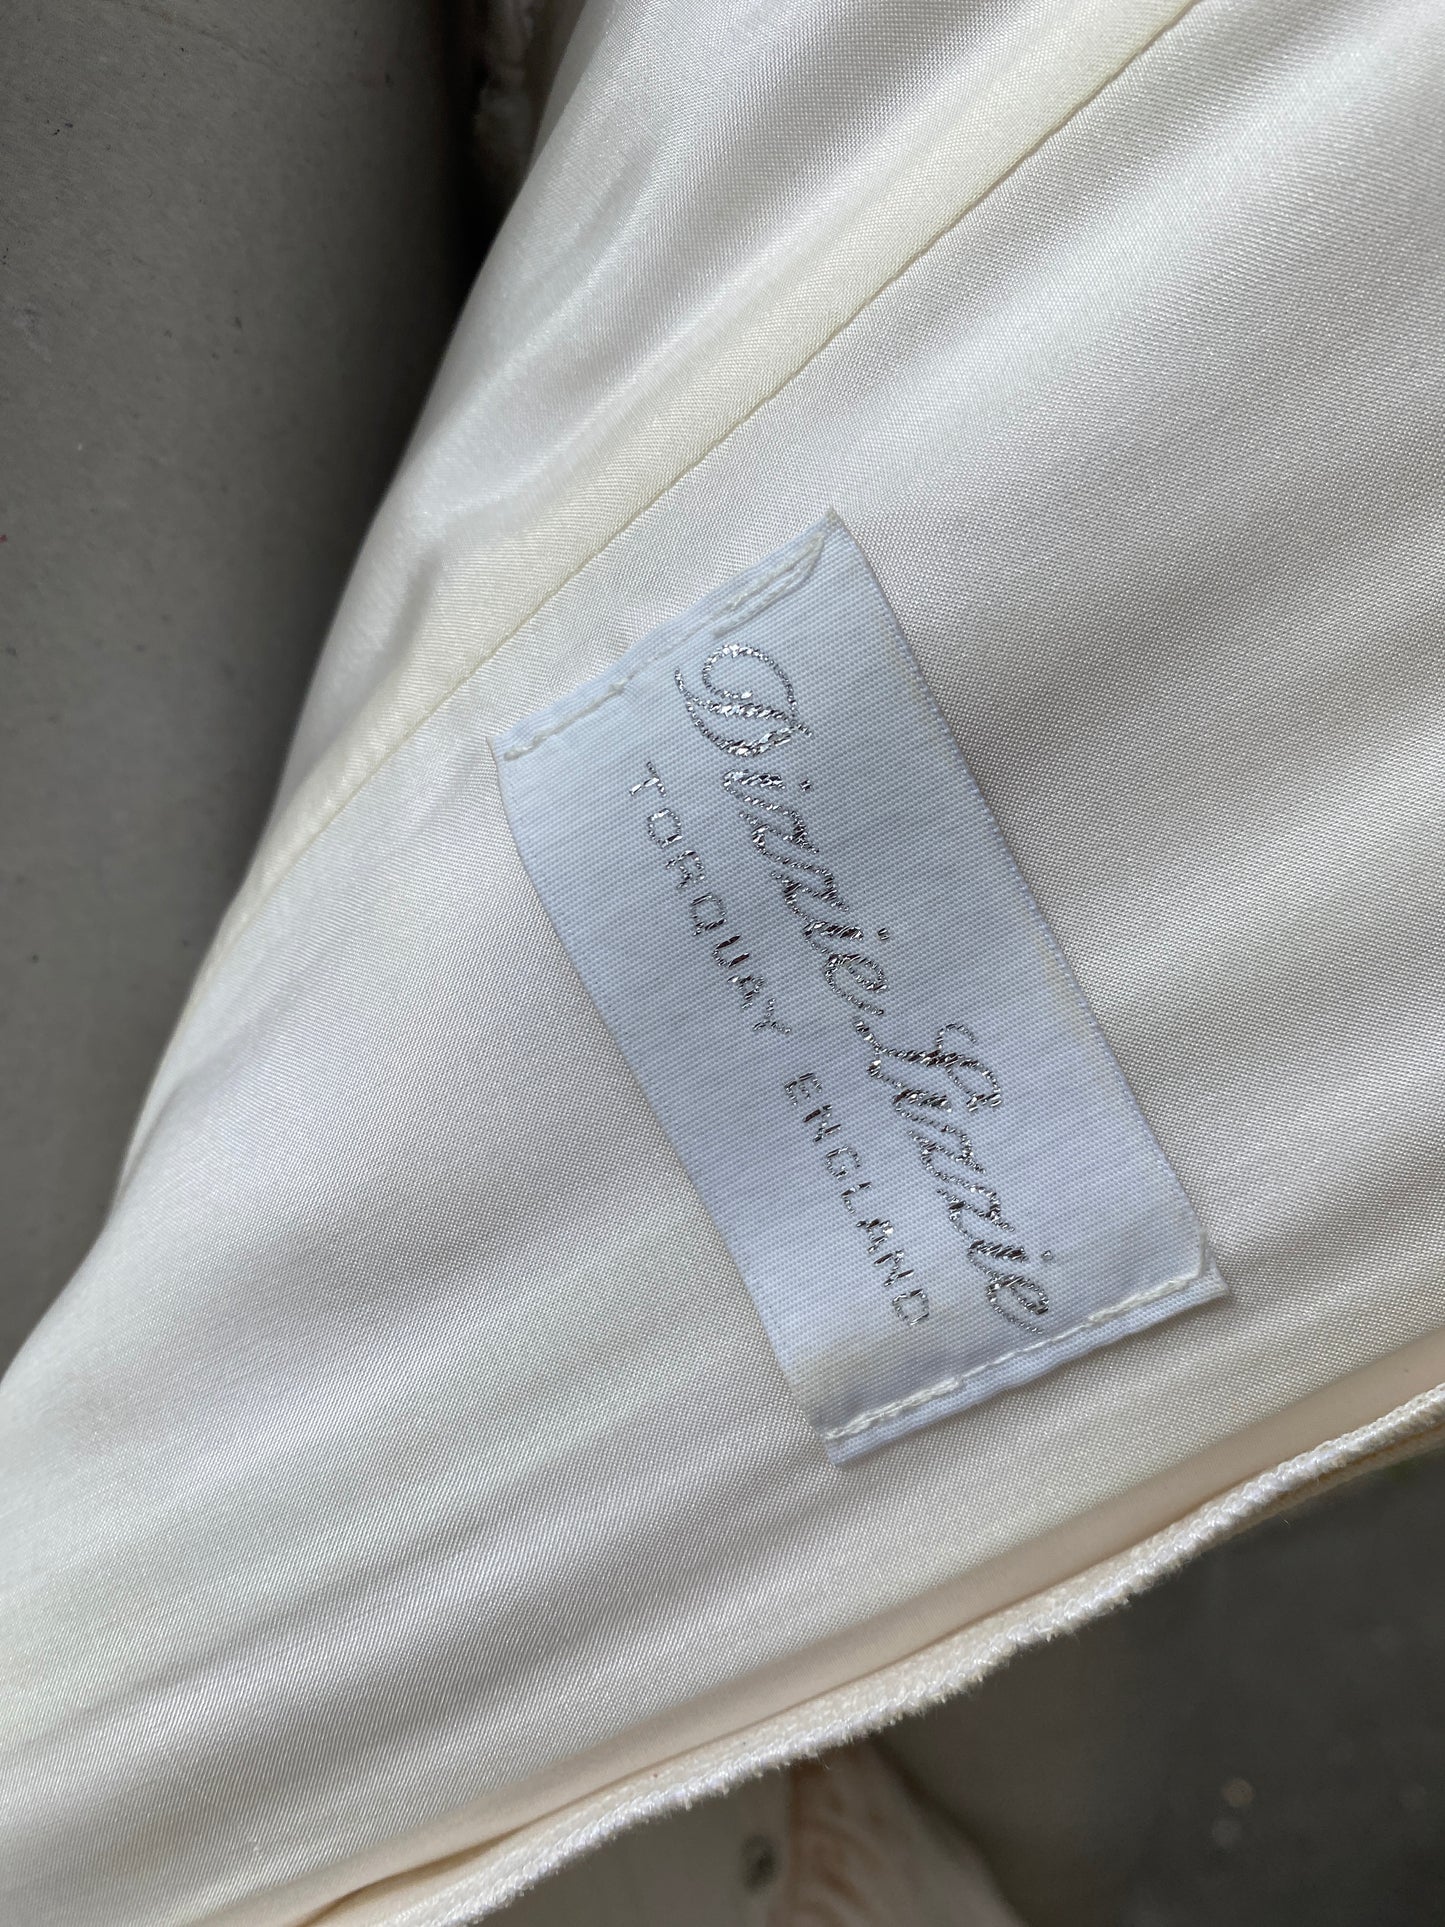 Dizzie Lizzie Off White Couture Vintage Wedding Dress Medium 10/12